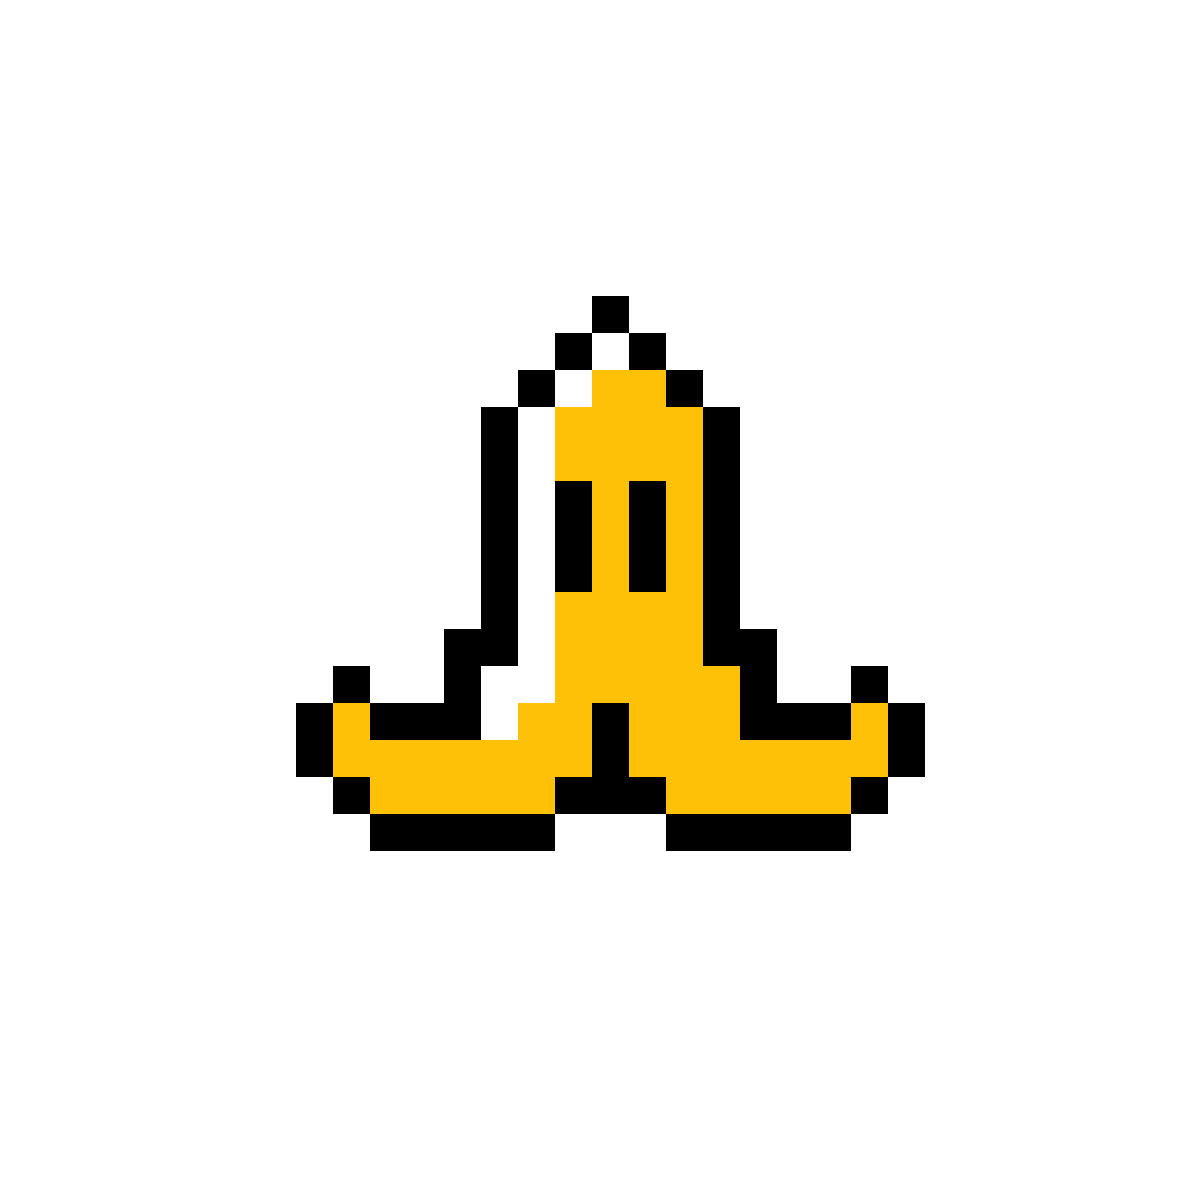 Pills Clipart Banana - Pixel Art Mario Kart , HD Wallpaper & Backgrounds